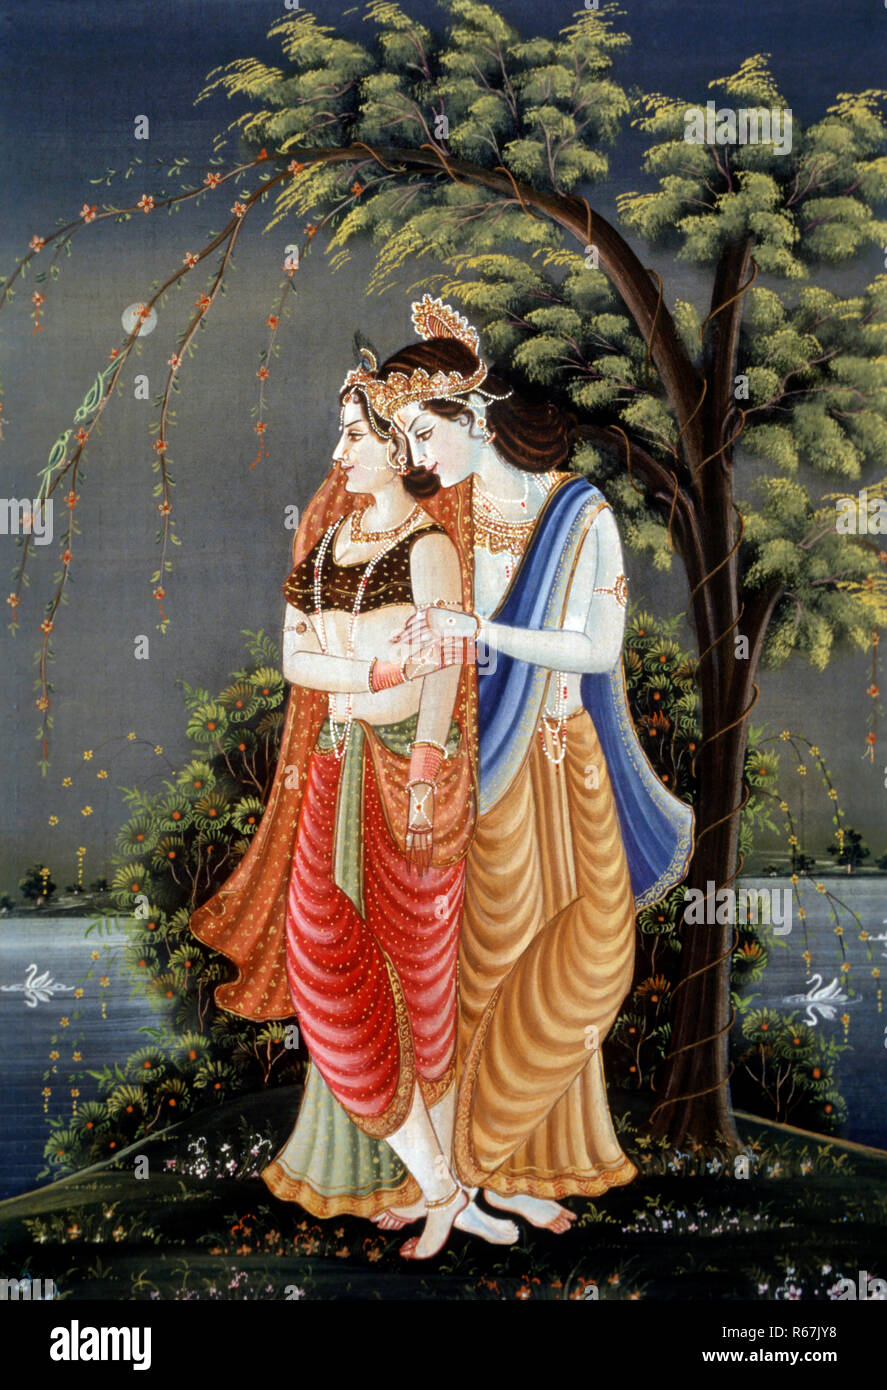 miniature painting of radha krishna, india Stock Photo